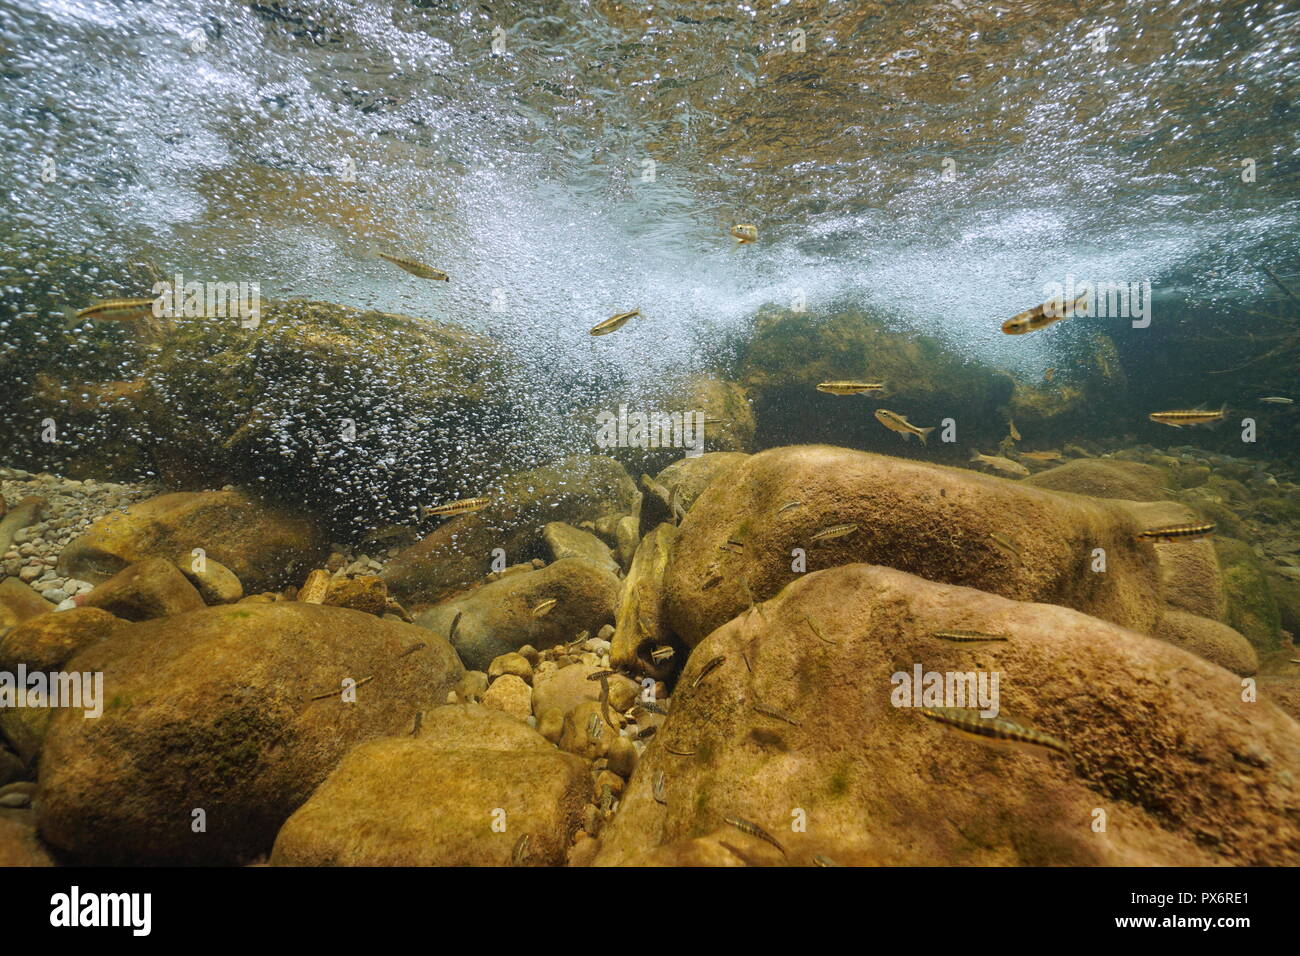 Une rivière de rochers sous l'eau avec des bulles d'air et d'argent de poissons d'eau douce, Phoxinus phoxinus, La Muga, Alt Empordà, en Catalogne, Espagne Banque D'Images